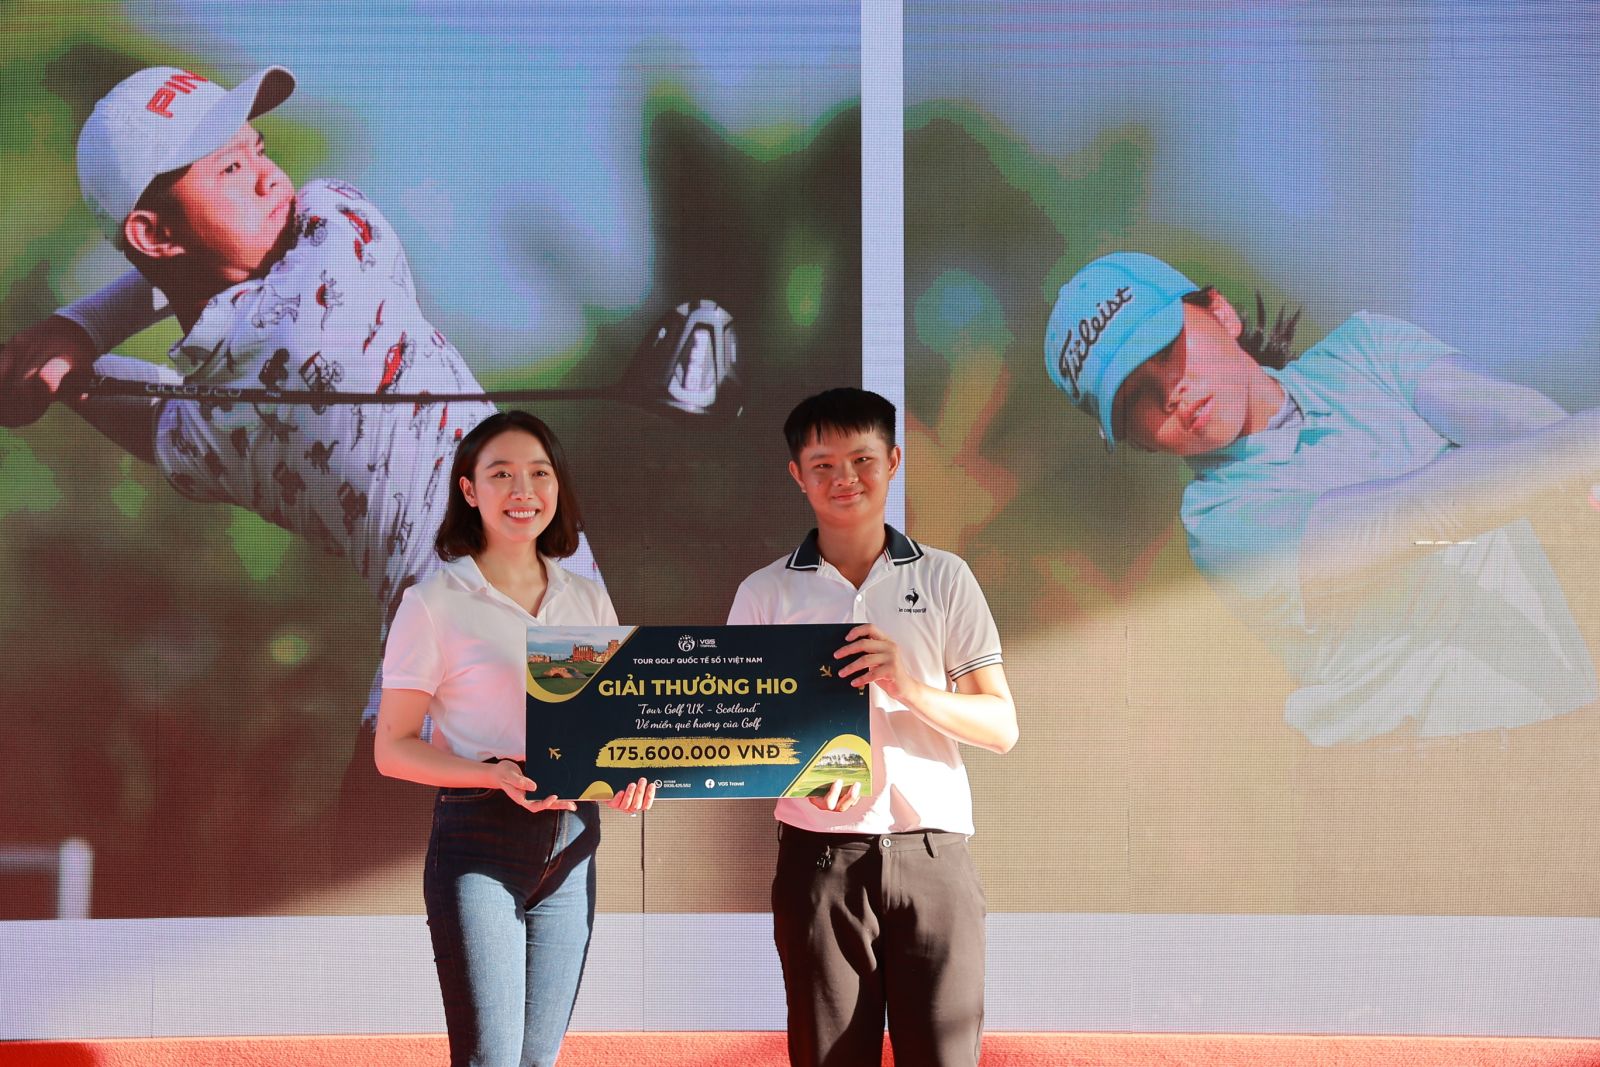 VJO 2022 - T99 Cup: VGS Travel trao giải HIO trị giá 175.600.000 VNĐ cho golfer Ngô Vĩnh Tường